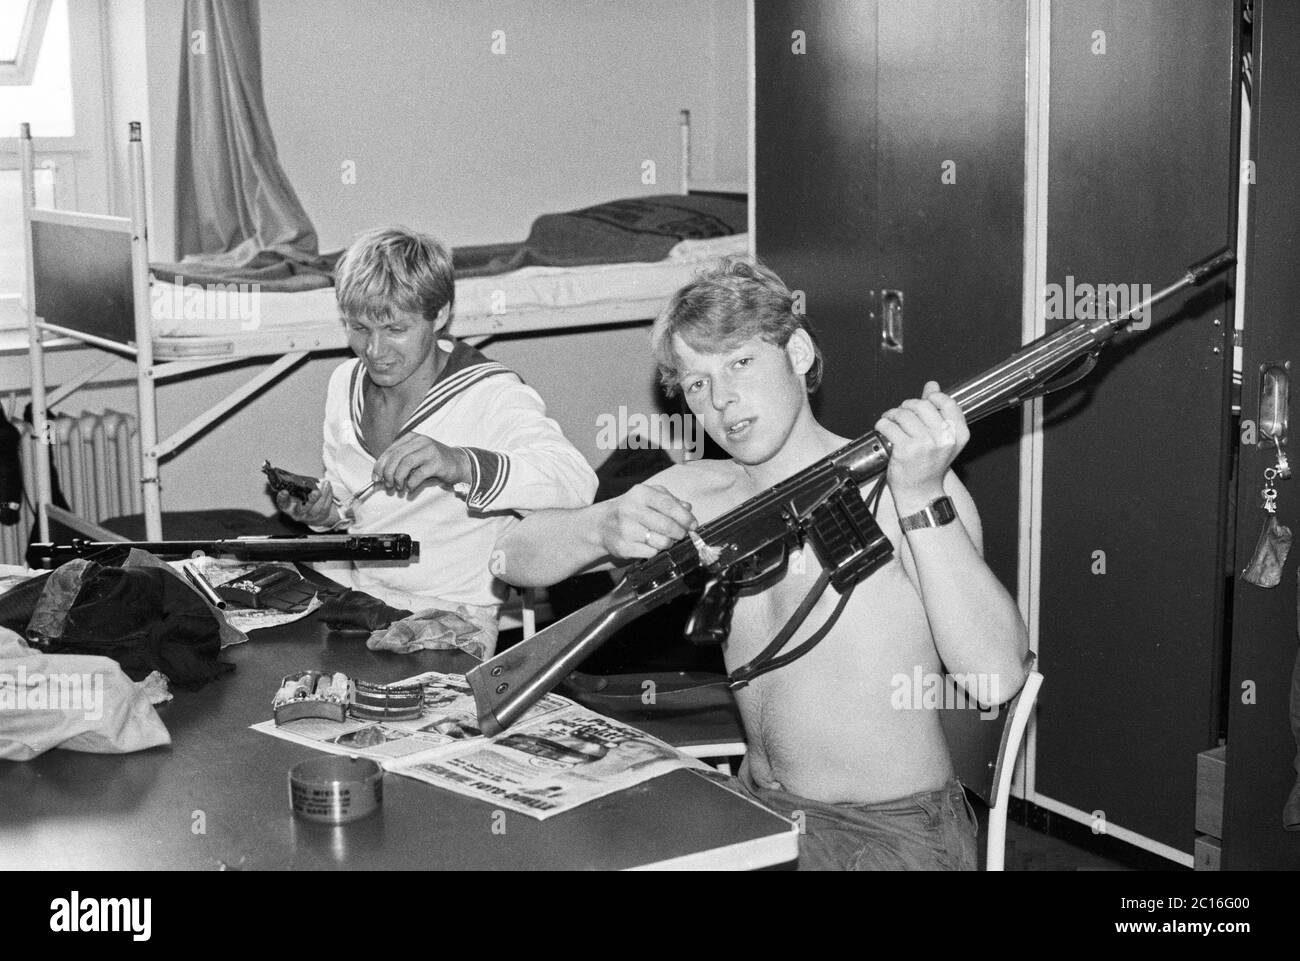 Pistole di pulizia, base navale, Isola di Borkum, agosto 1981, bassa Sassonia, Germania Foto Stock